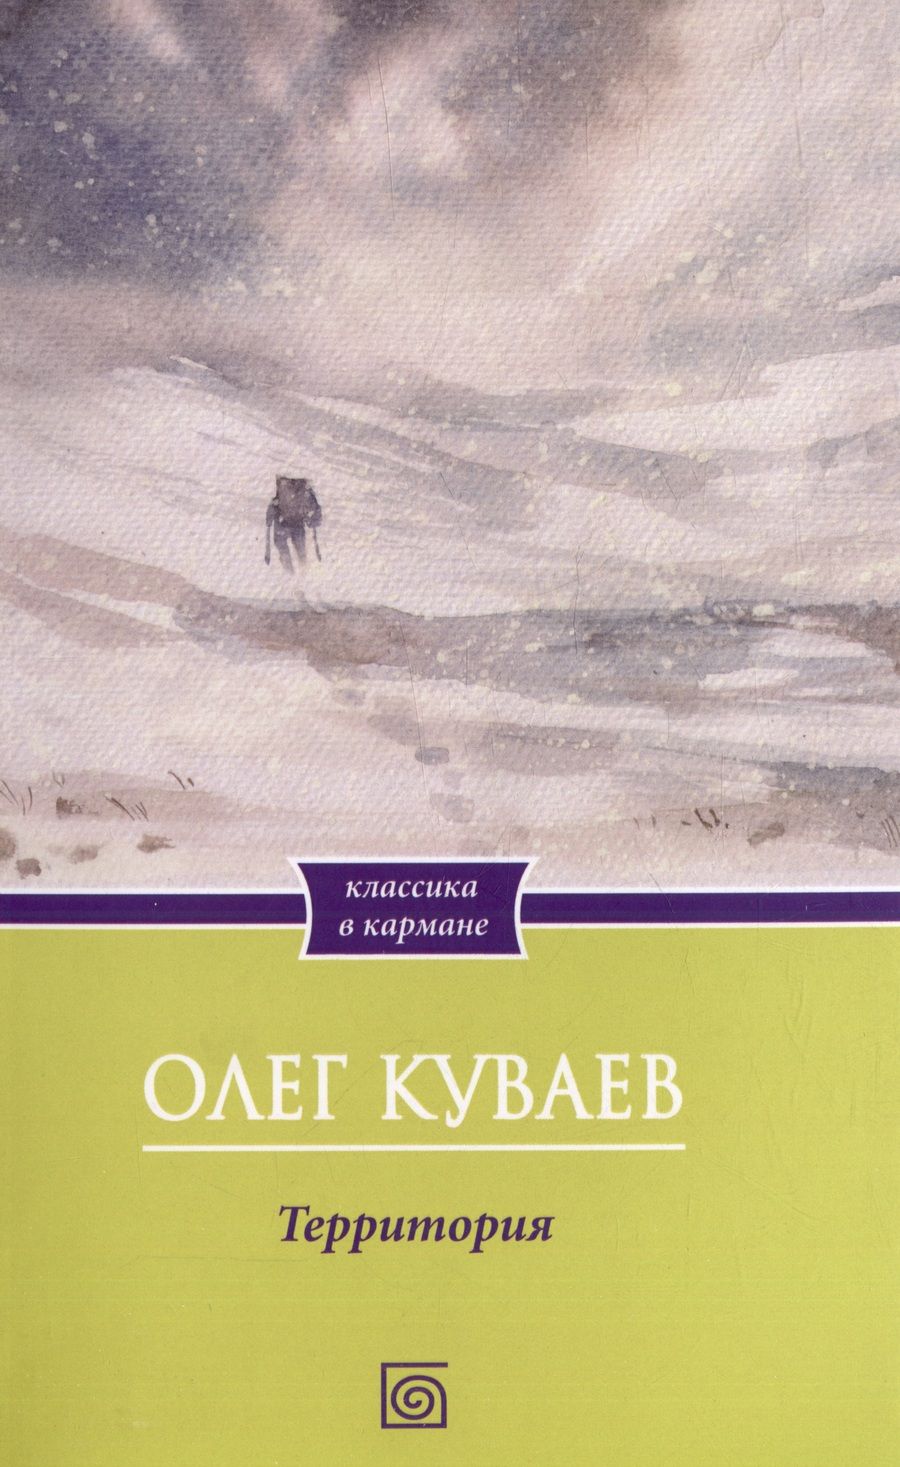 Обложка книги "Куваев: Территория"